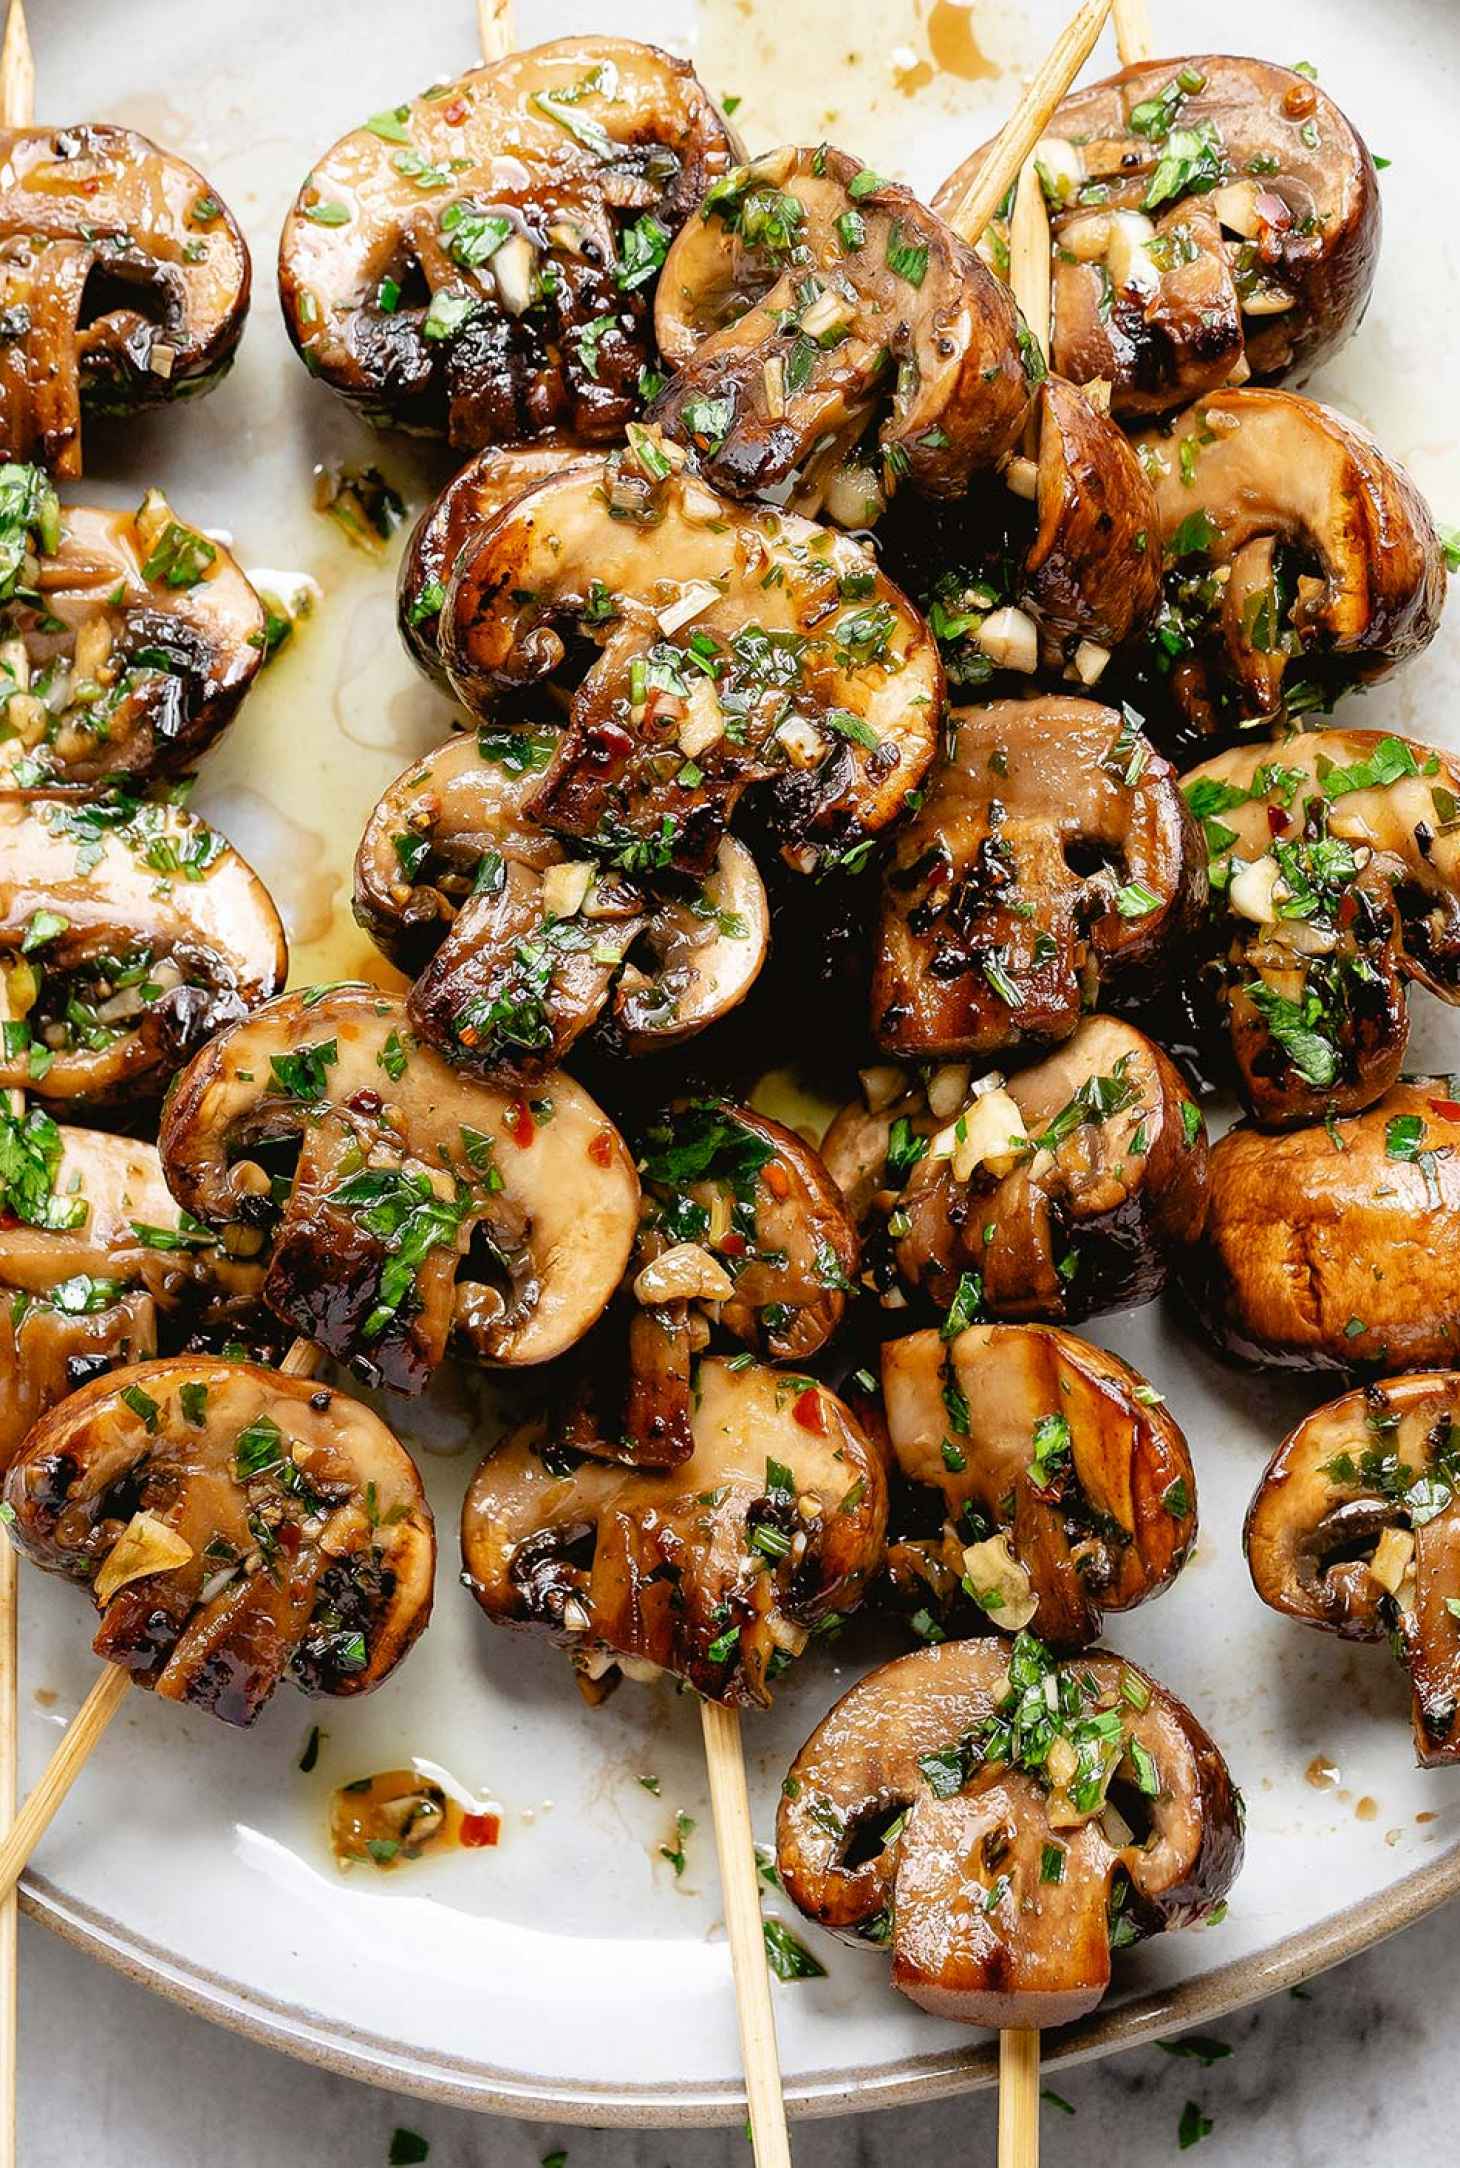 Grilled Garlic Mushroom Skewers - #recipe by #eatwell101 - https://www.eatwell101.com/grilled-mushroom-skewers-recipe